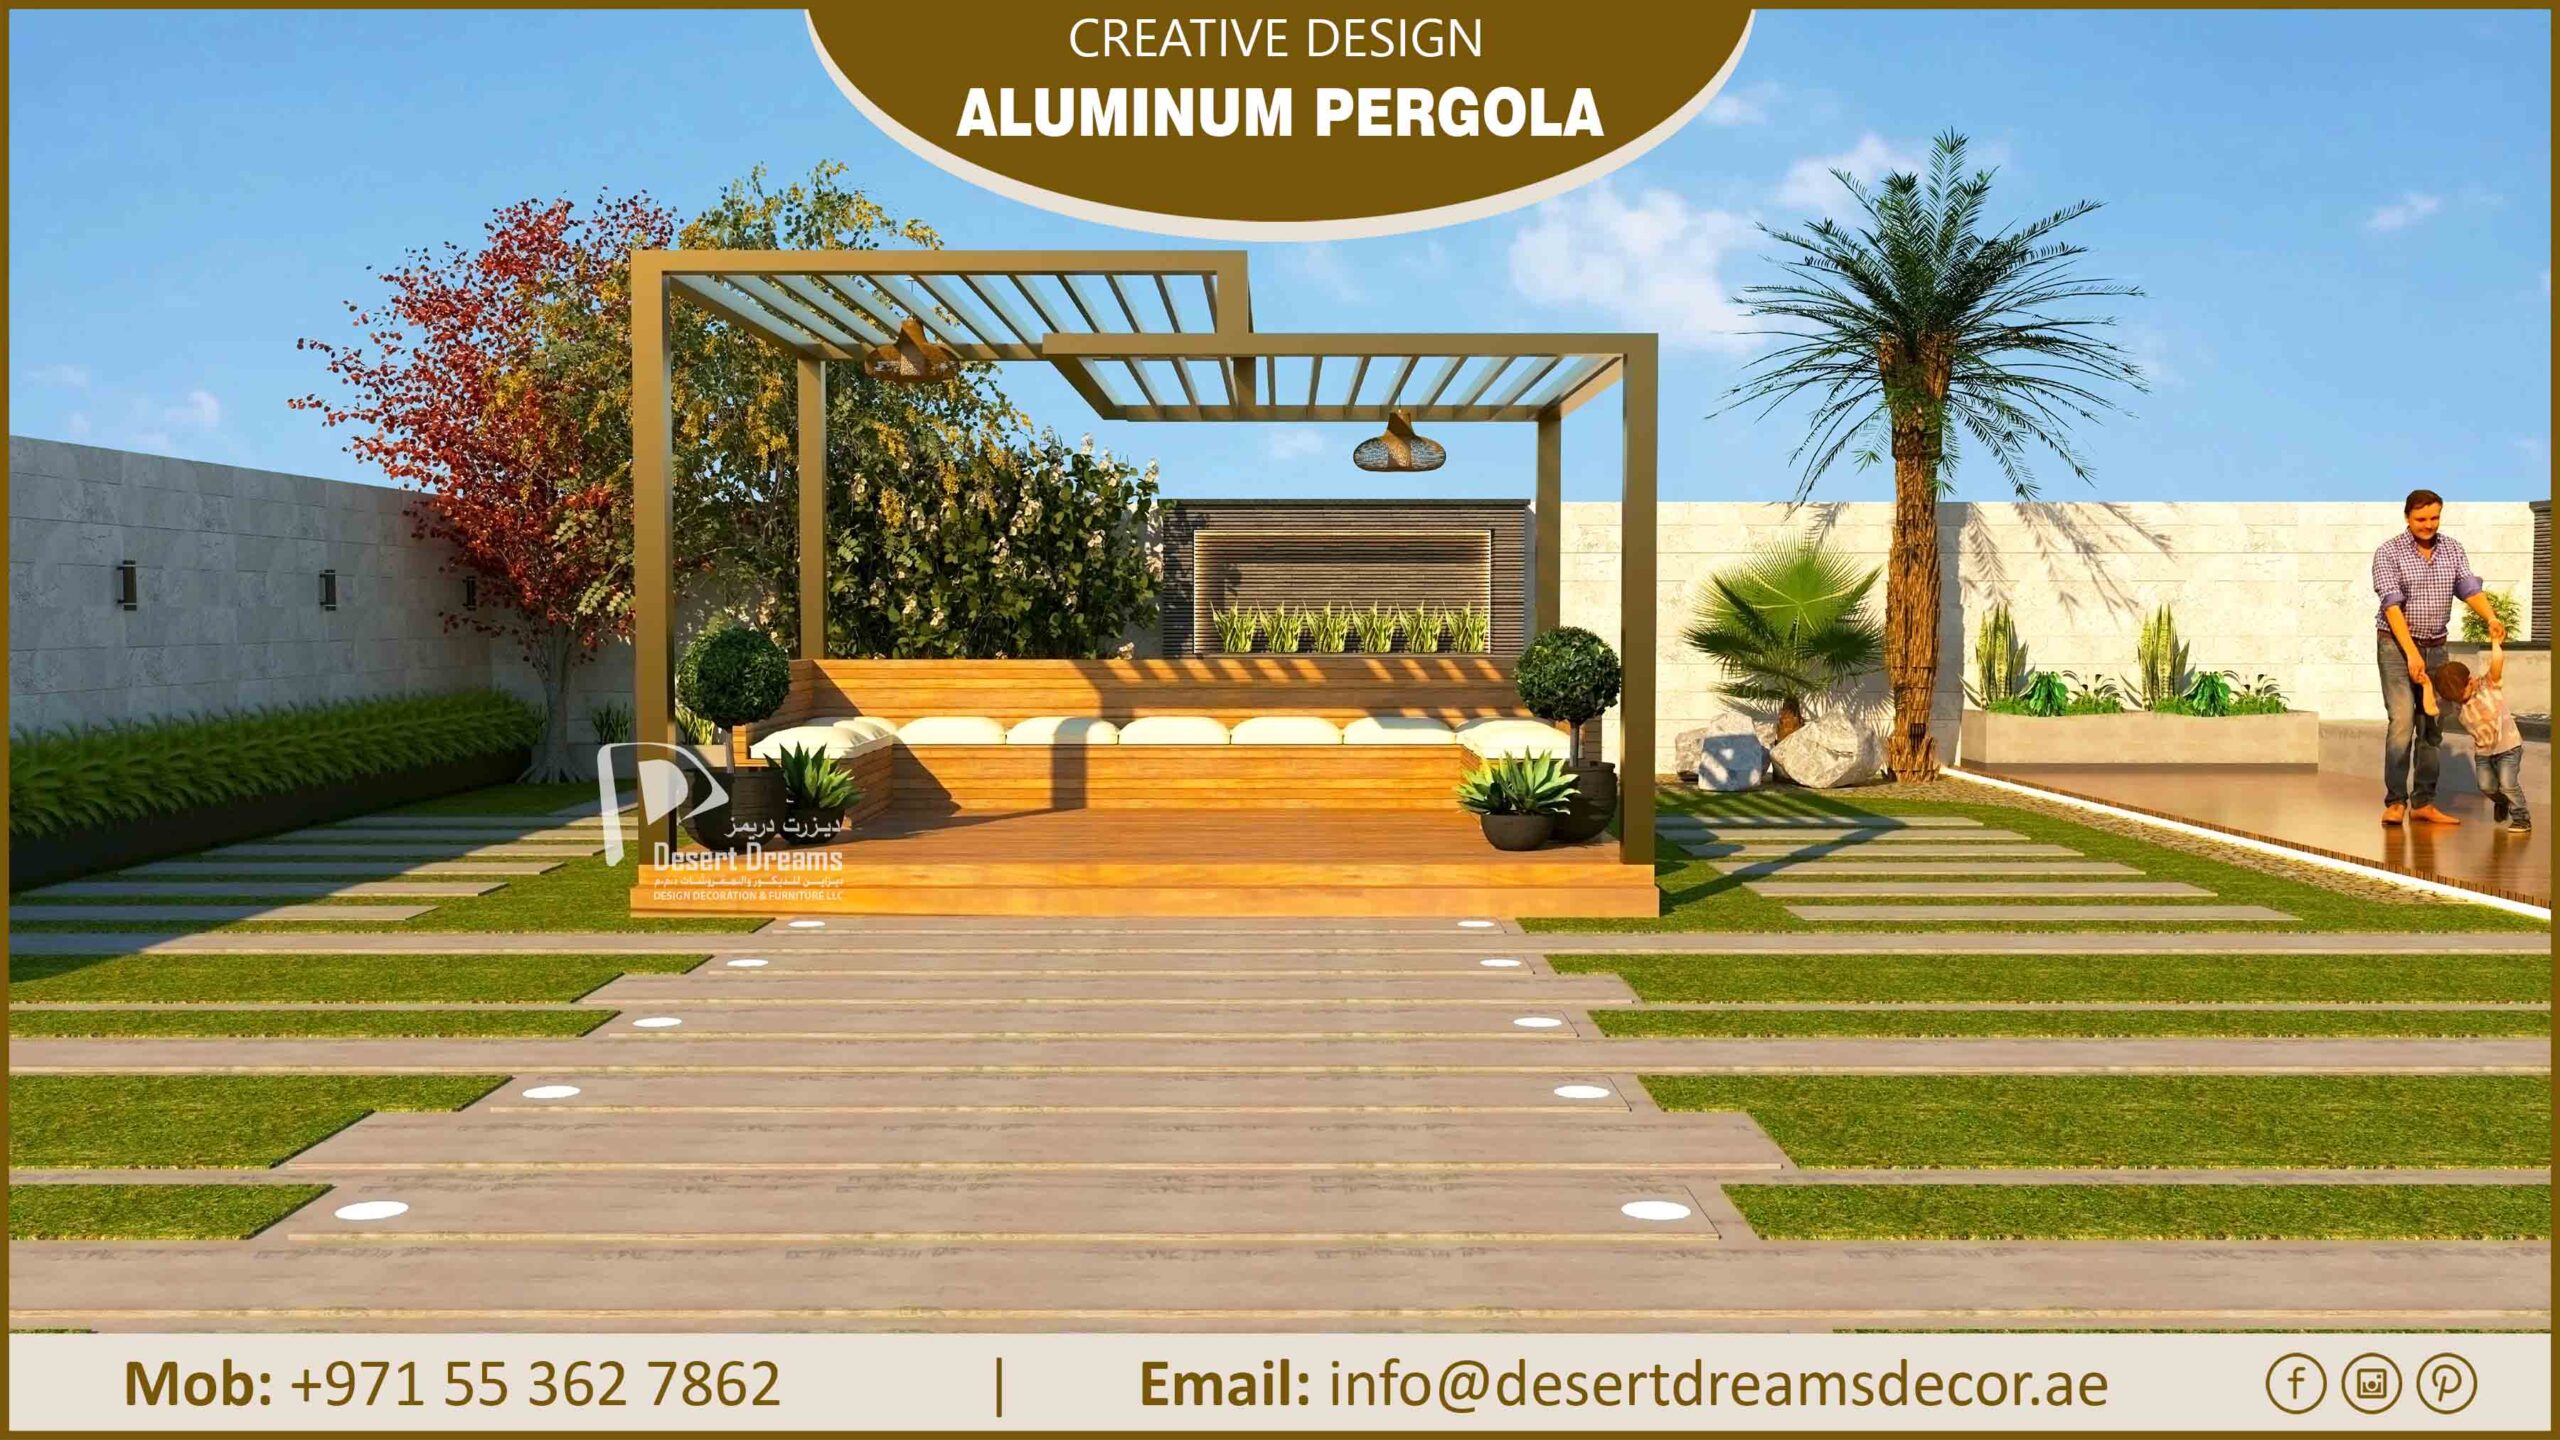 Creative Design Aluminum Pergola in UAE-1.jpg